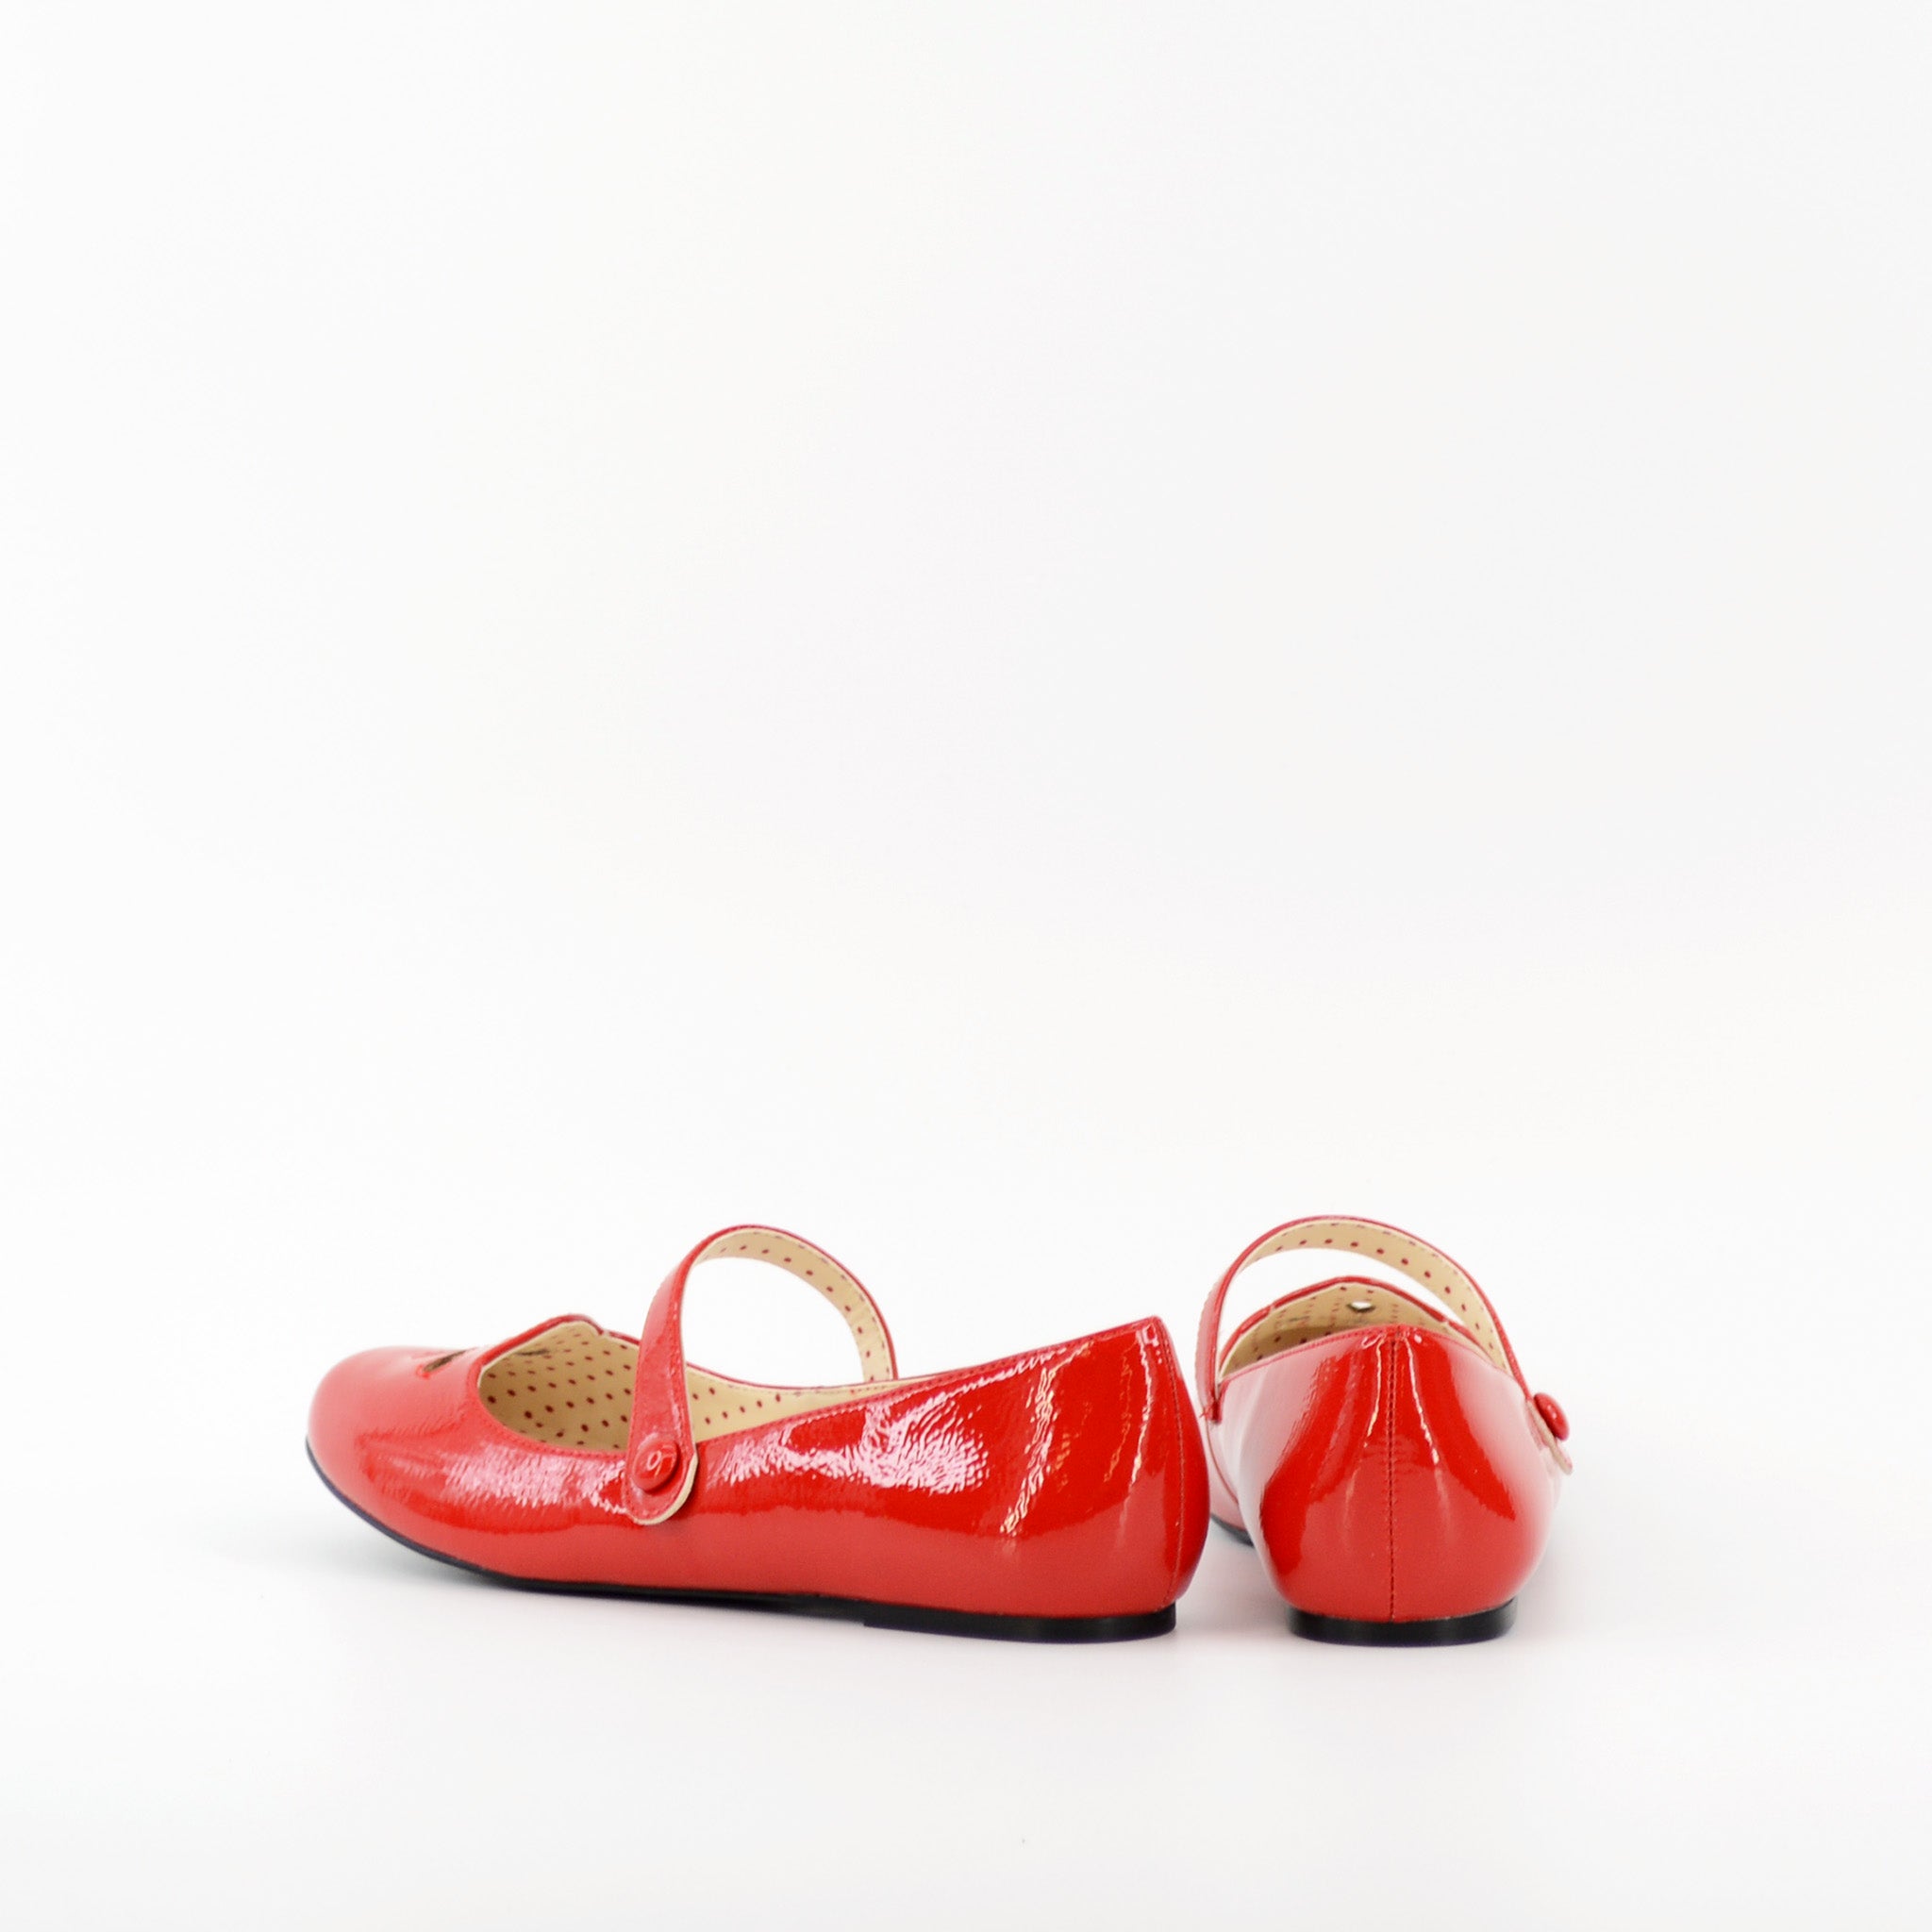 Elizabeth – B.A.I.T. Footwear